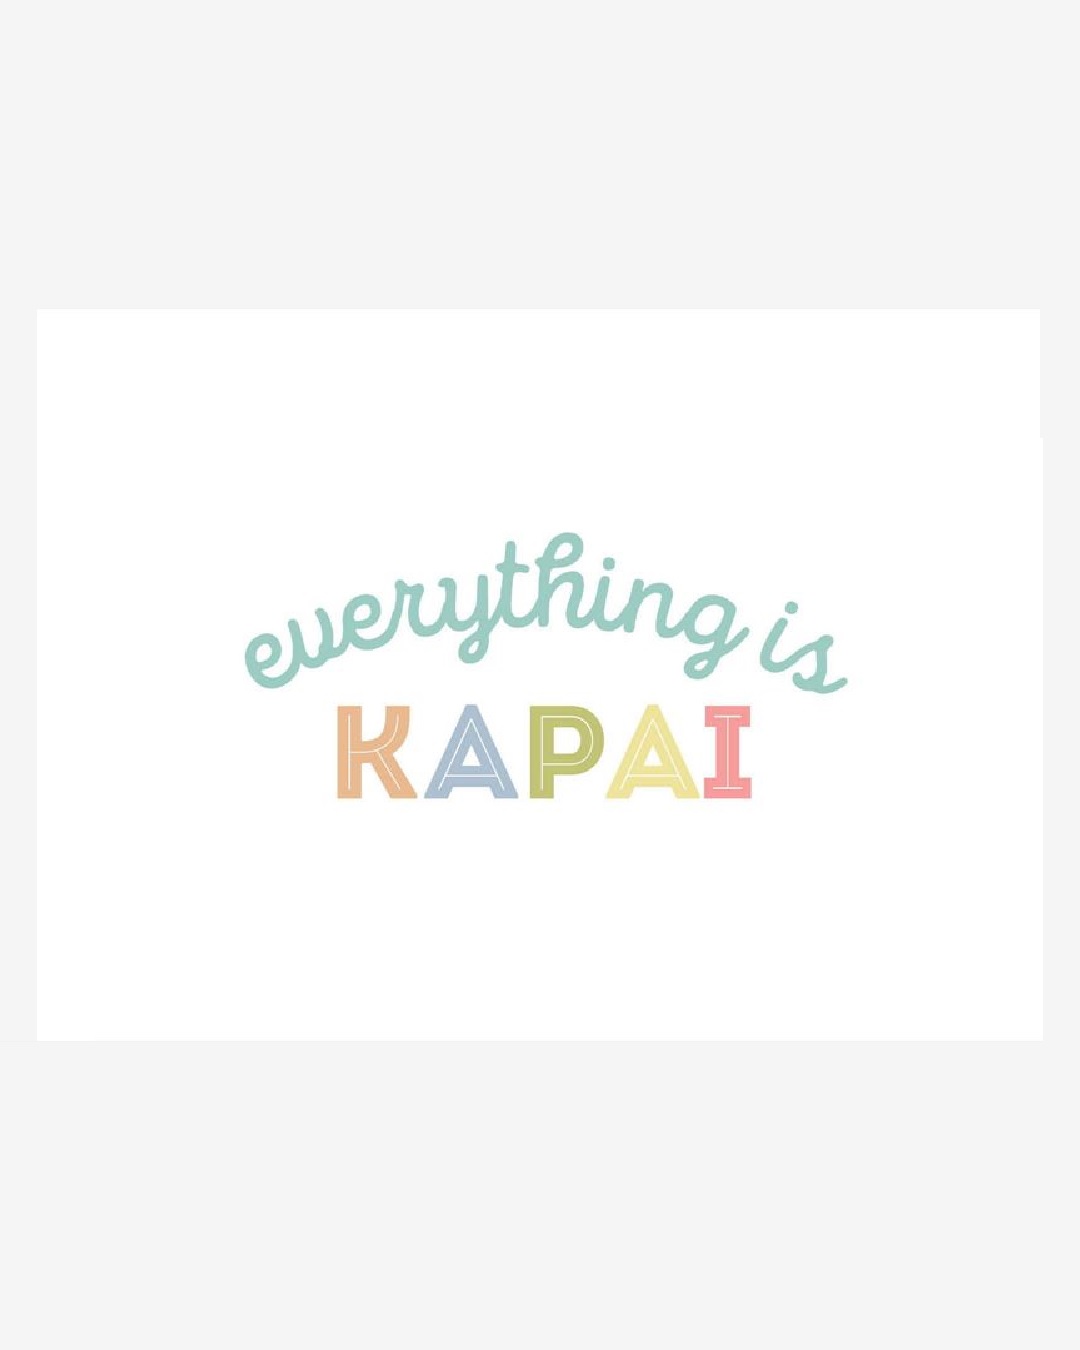 everything is kapai card